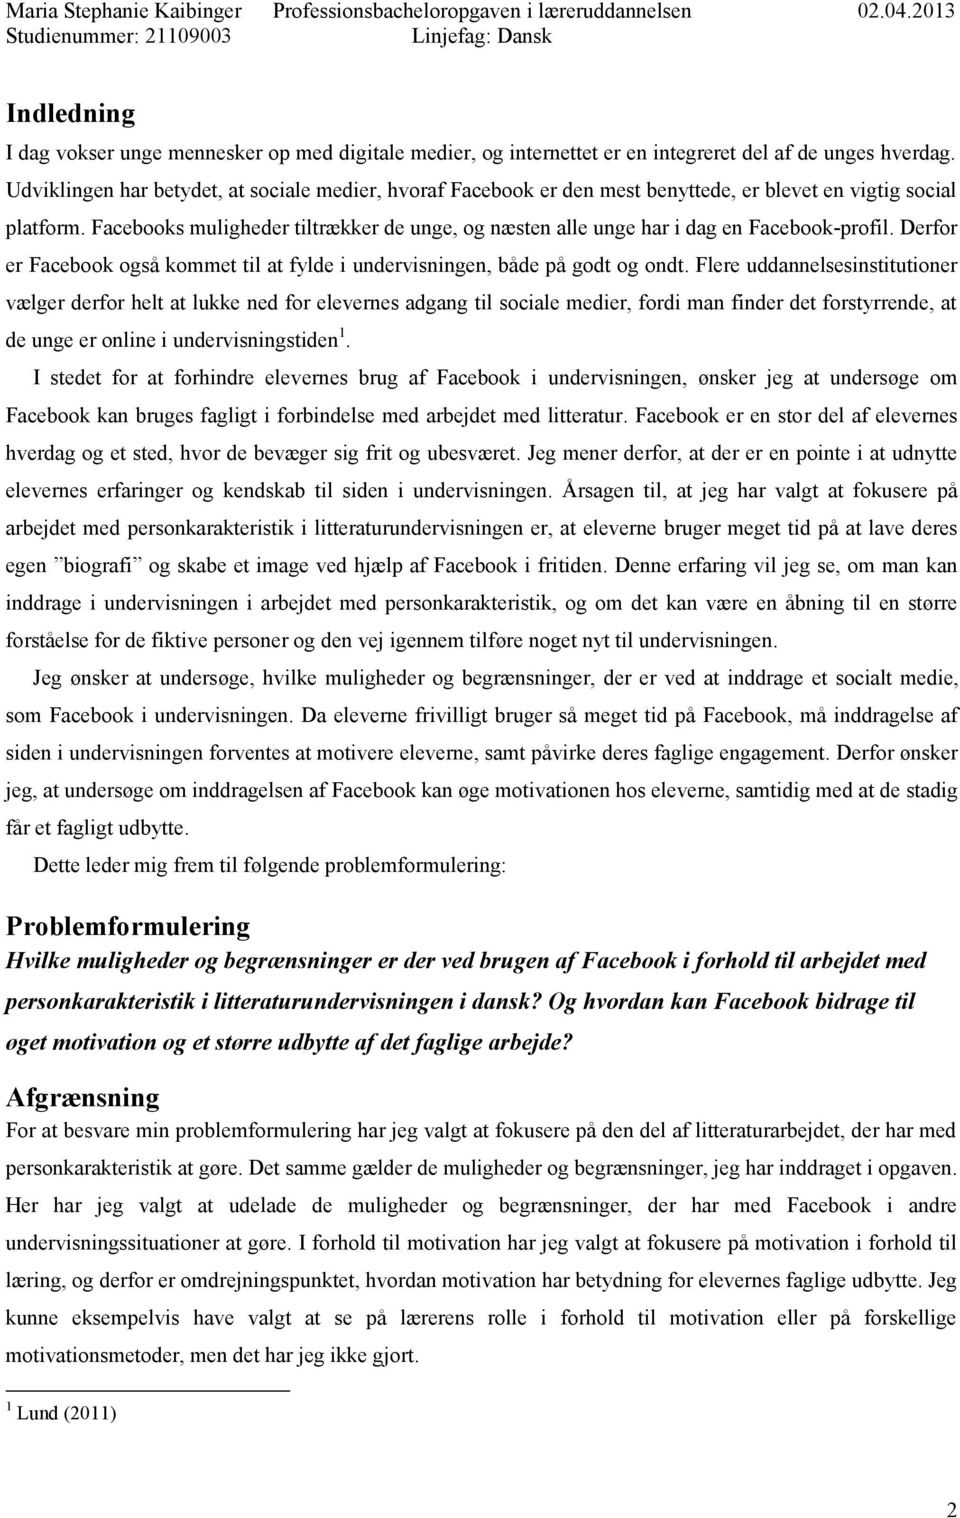 Facebook og personkarakteristik - PDF Free Download